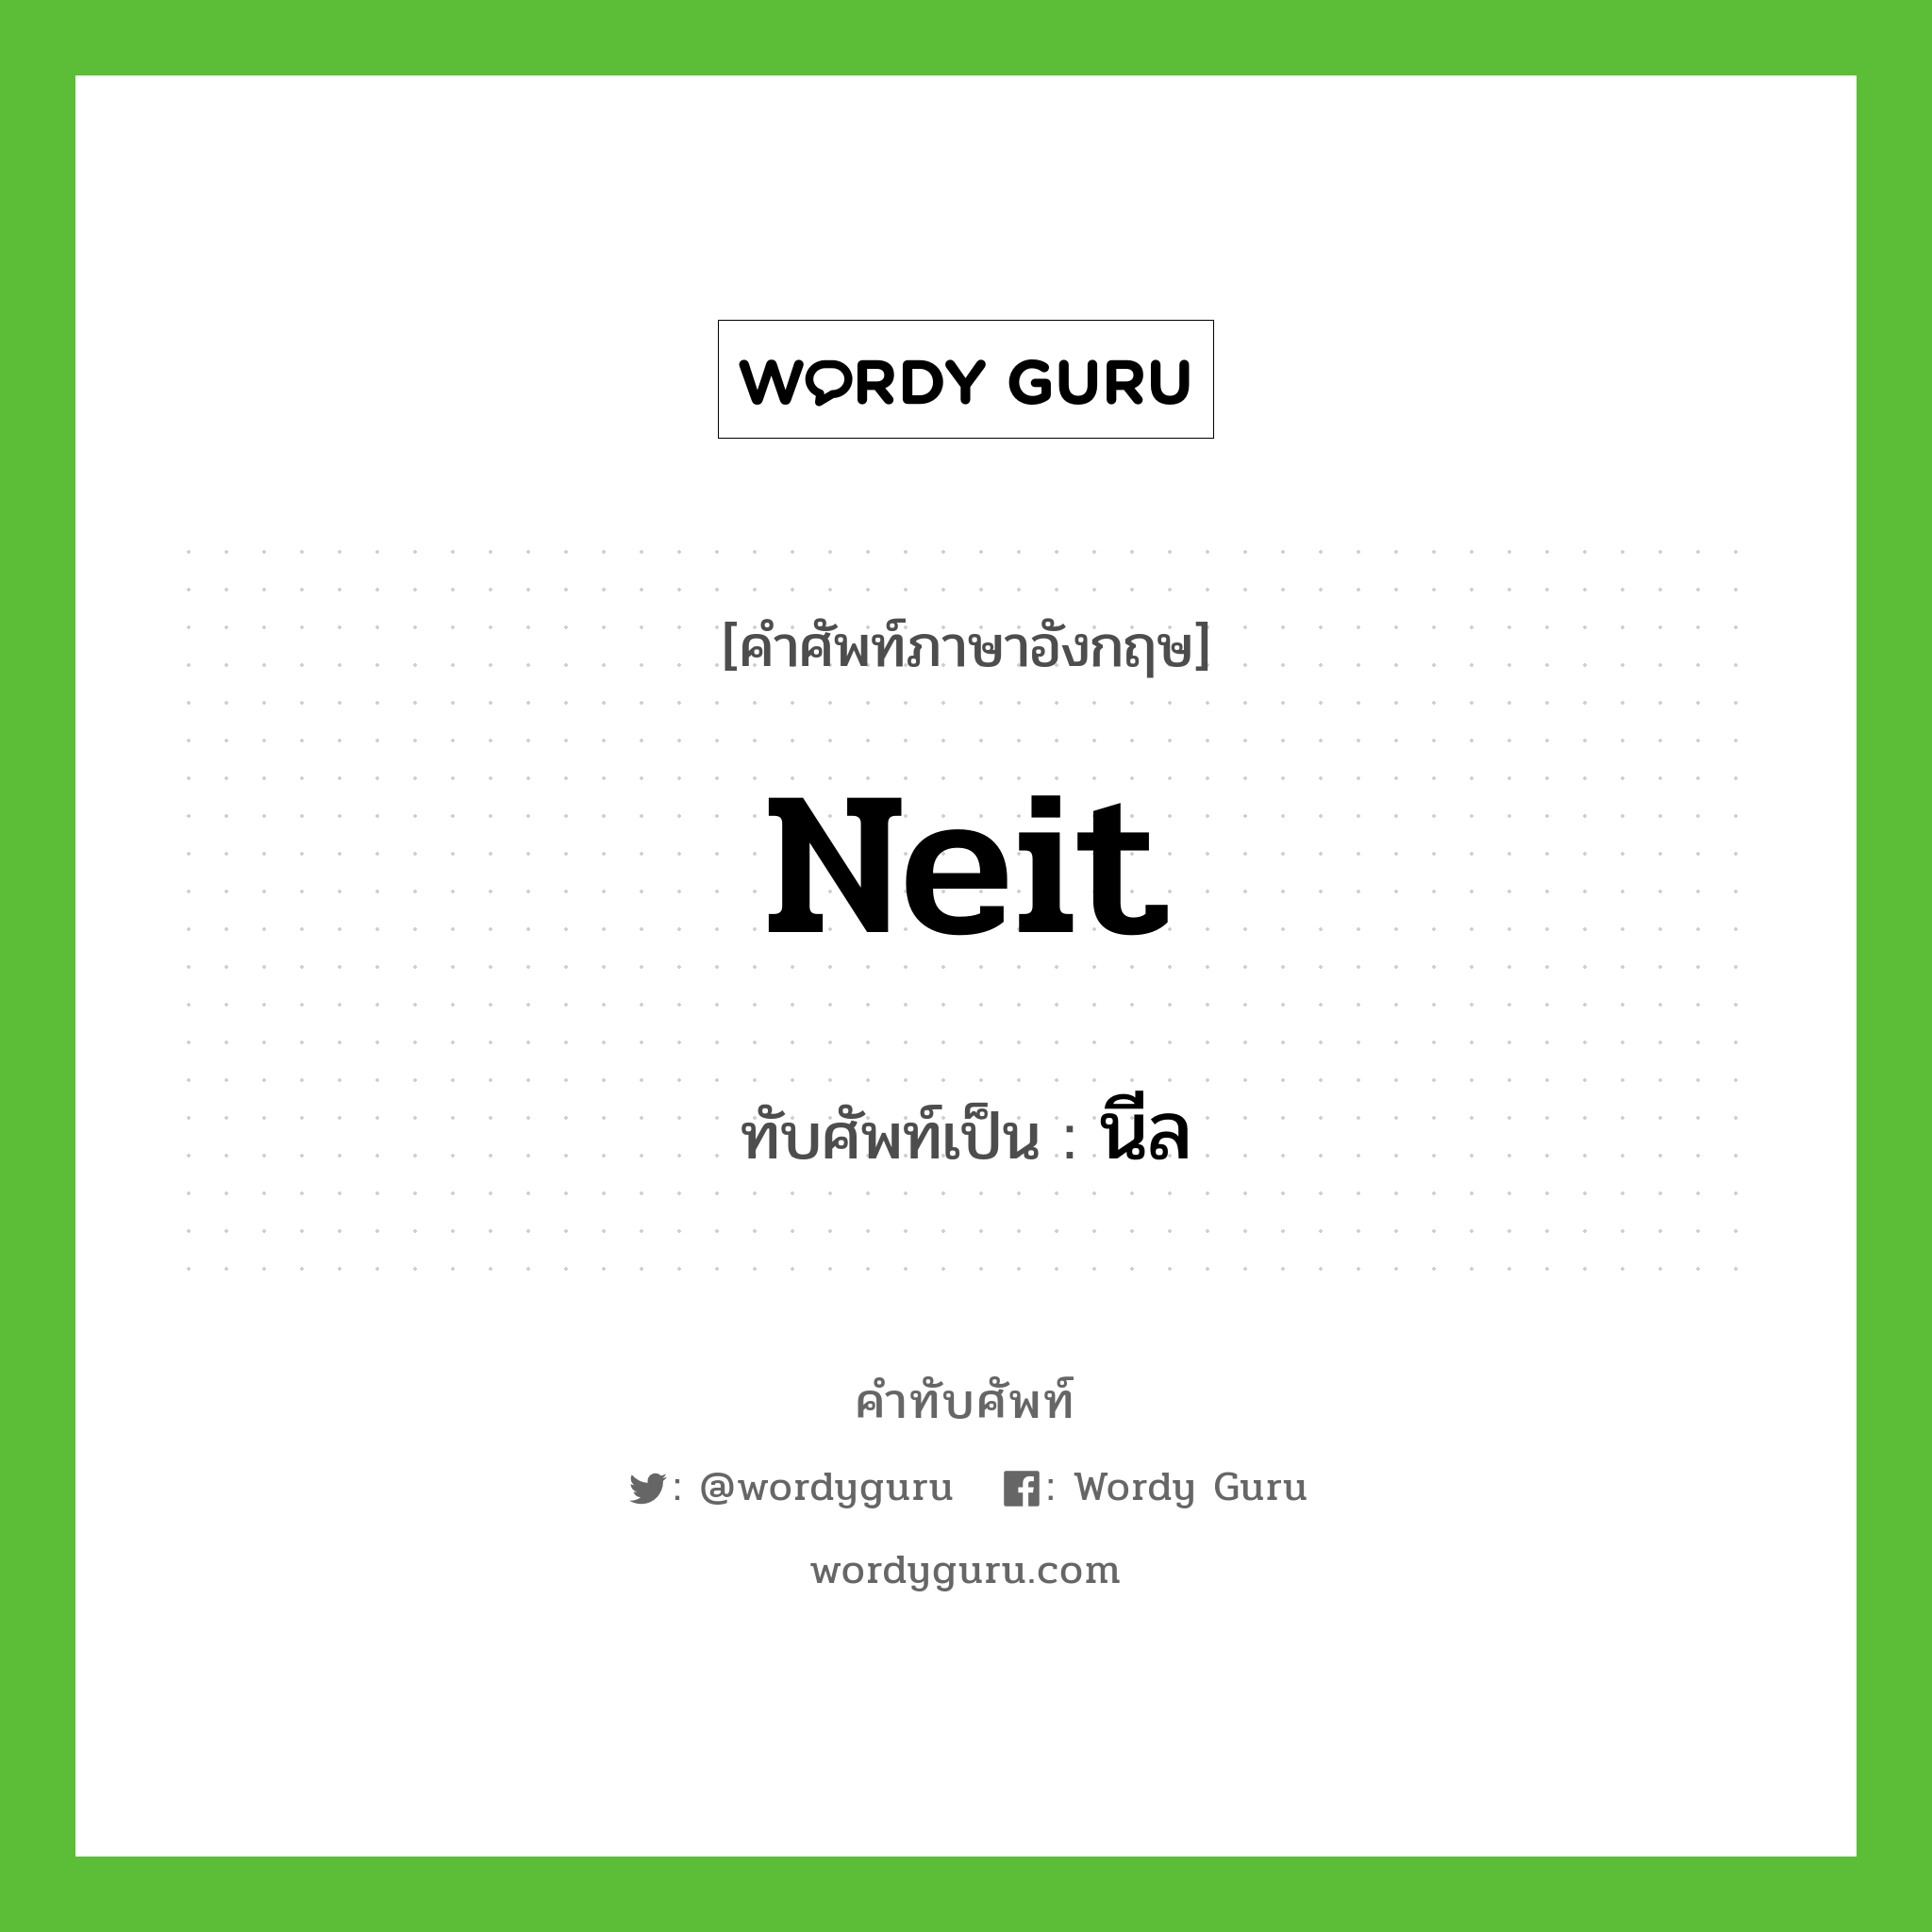 Neit เขียนเป็นคำไทยว่าอะไร?, คำศัพท์ภาษาอังกฤษ Neit ทับศัพท์เป็น นีล